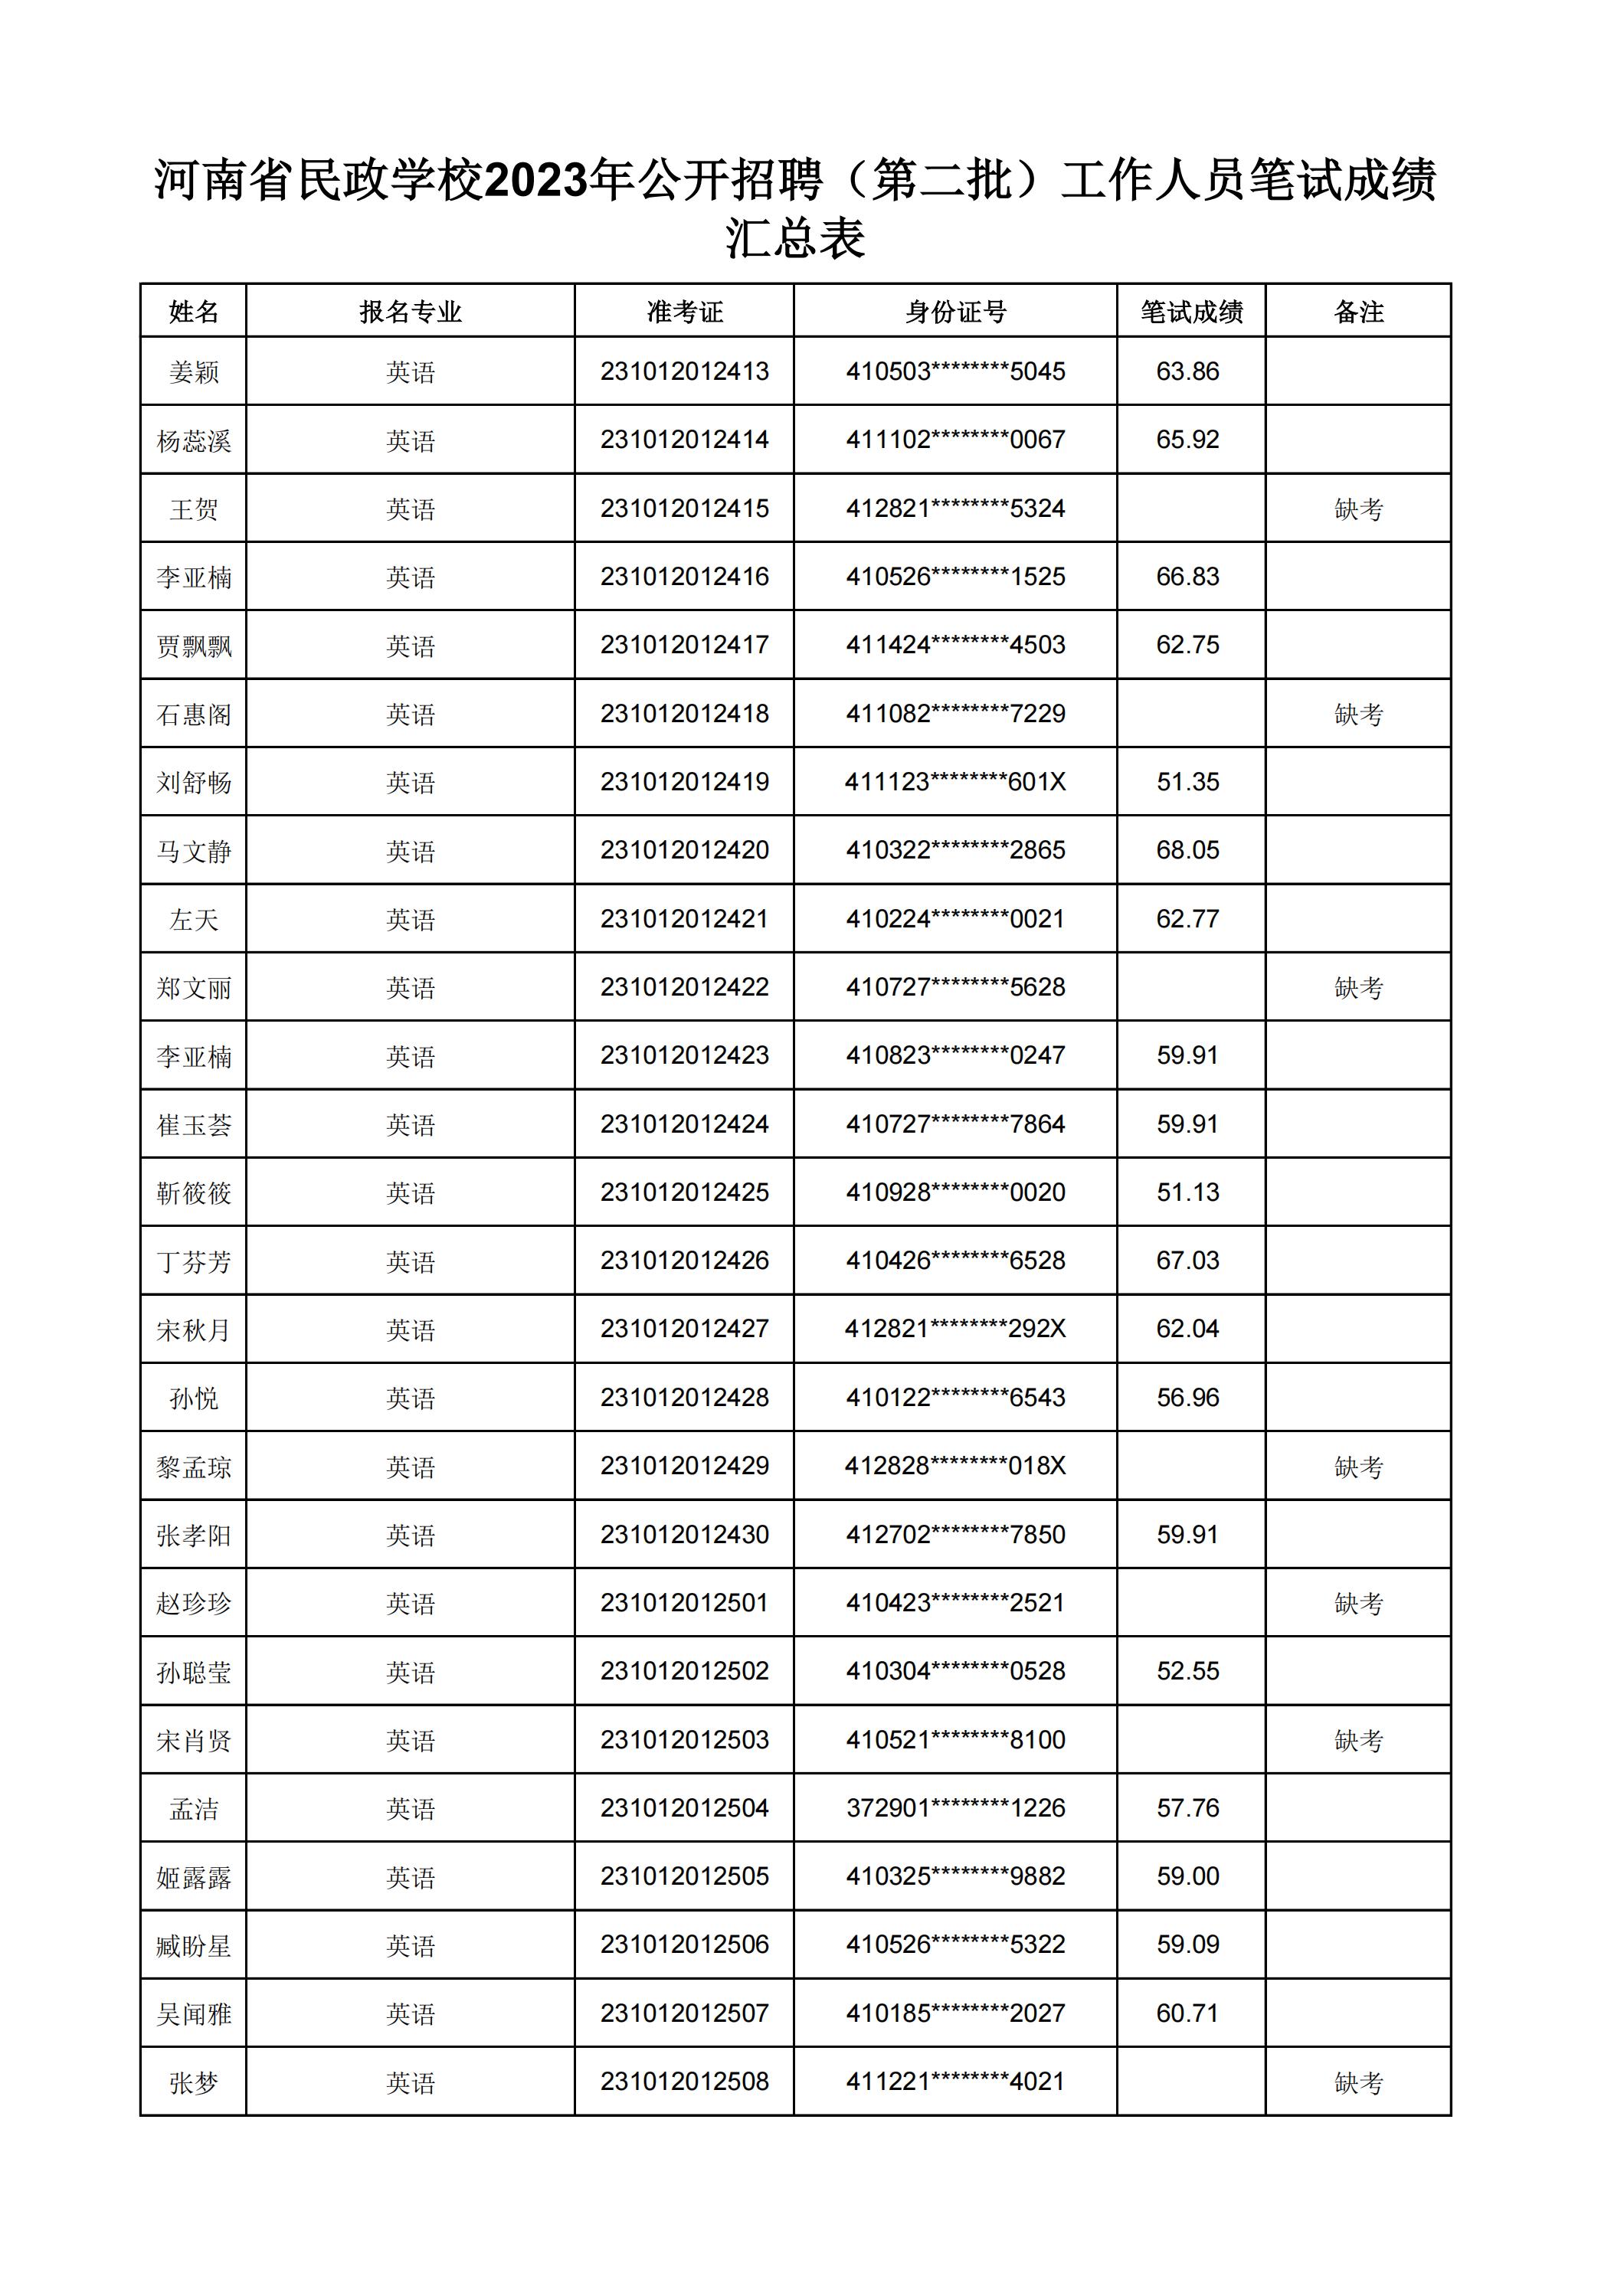 河南省民政学校2023年公开招聘（第二批）工作人员笔试成绩汇总表(2)_27.jpg